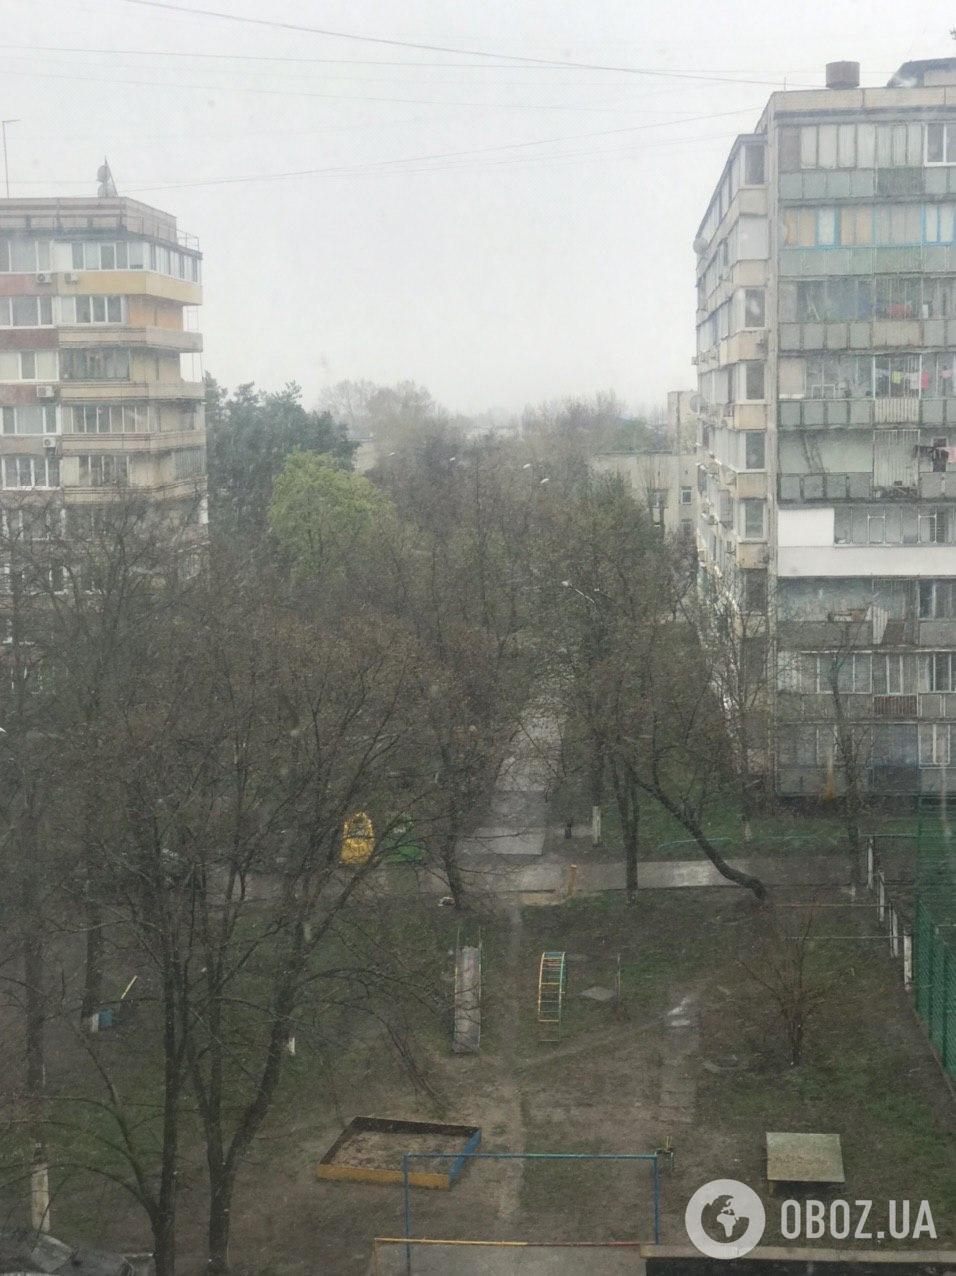 Снег в Киеве, 14 апреля 2020 год